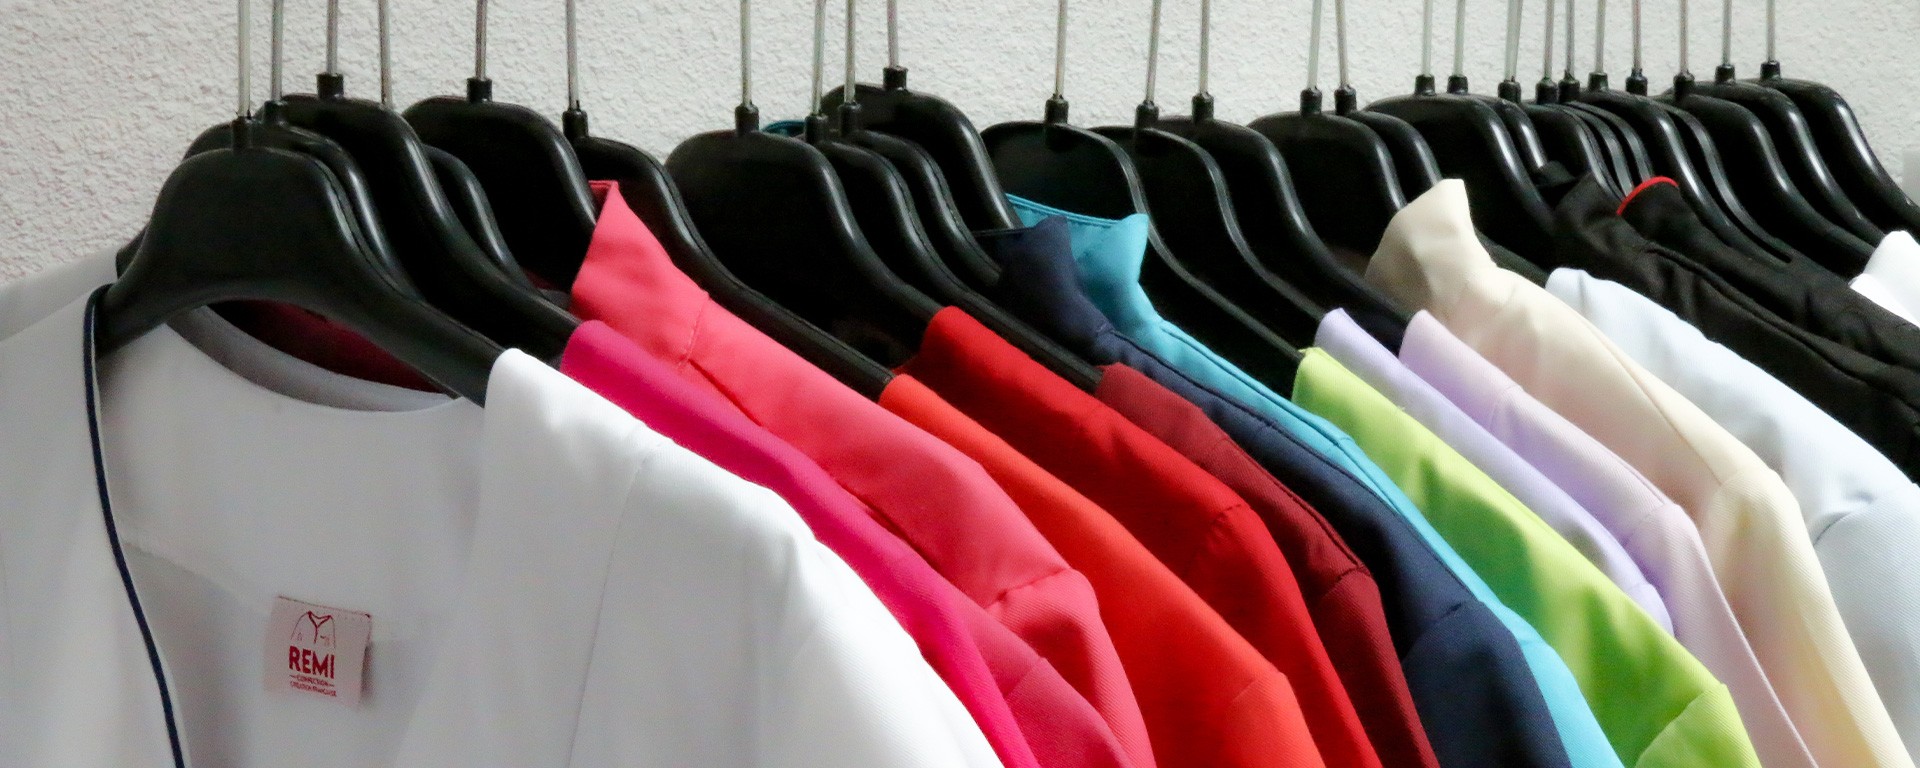 Collection de blouses, vestes, tuniques du Groupe Rémi Confection